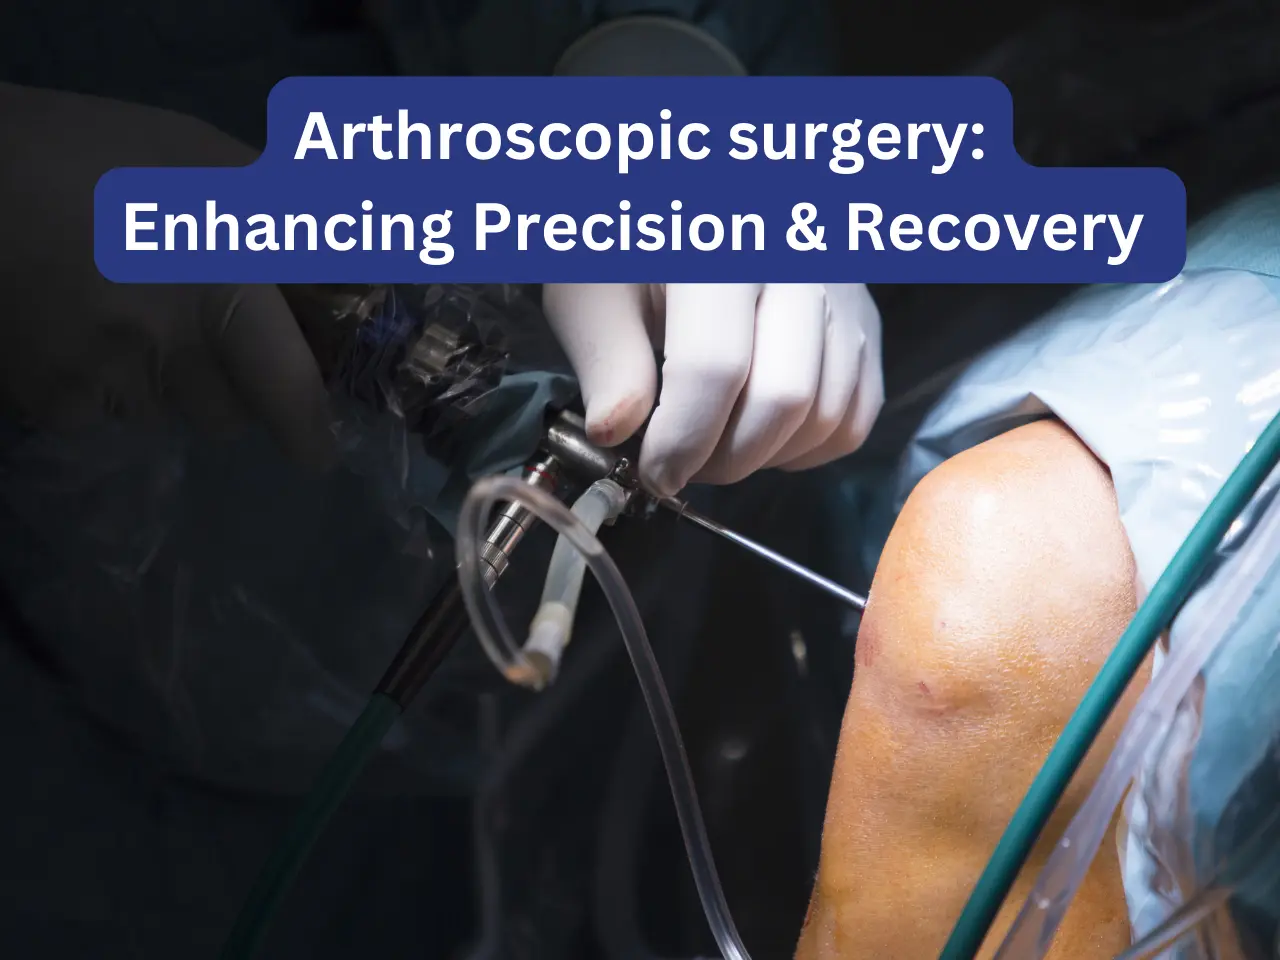 Arthroscopic Precision & Recovery